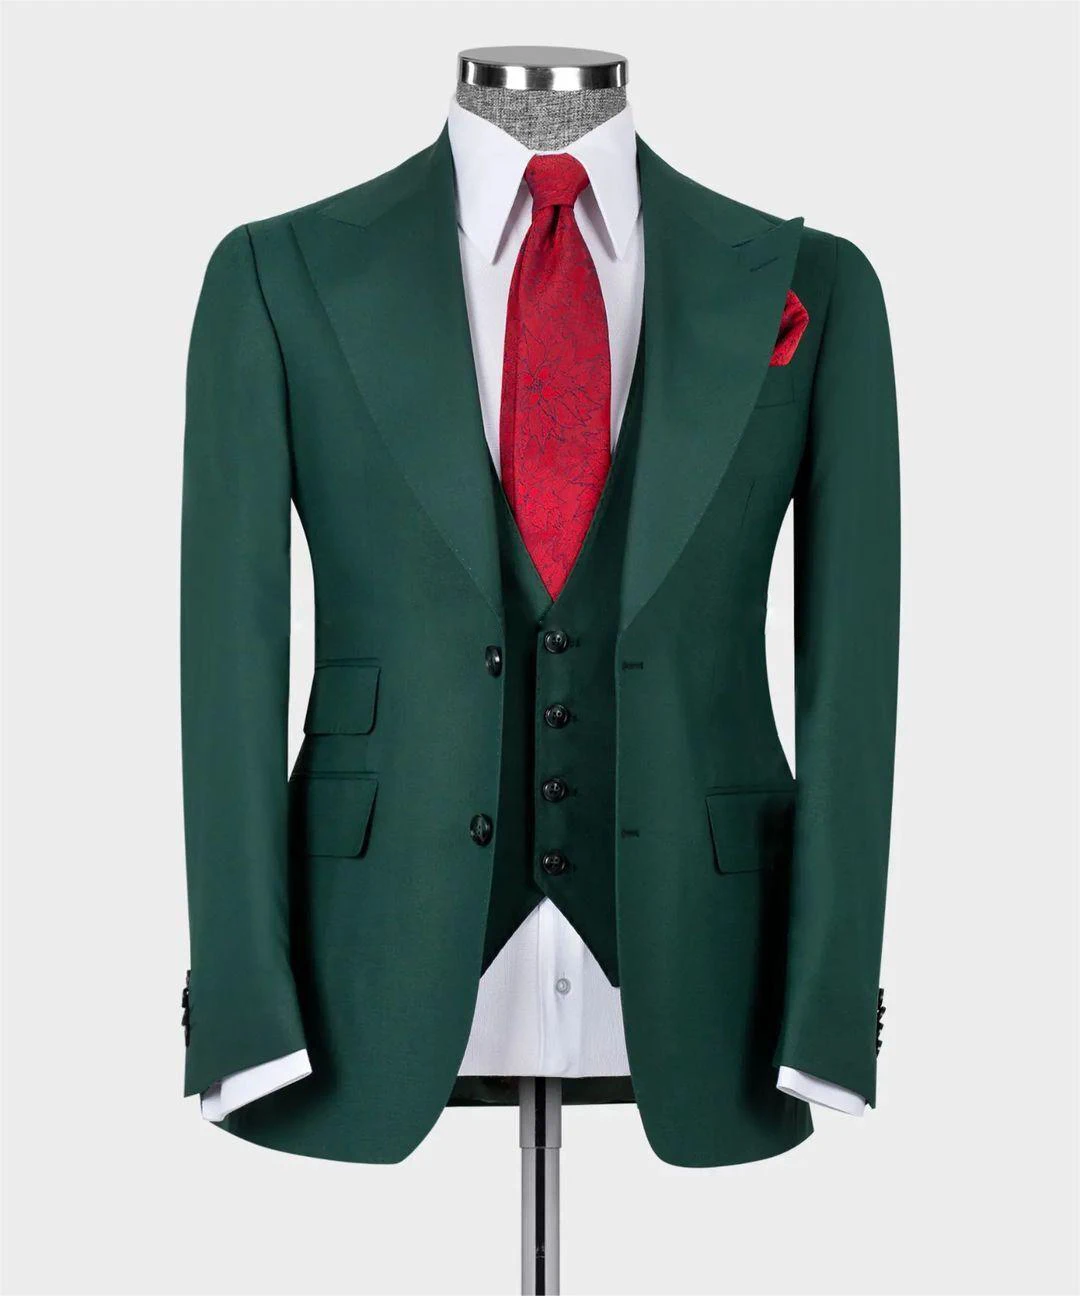 

Green Men's Suit Business Men 3 Pieces Italian Suit Tuxedo Suit Coat Gentleman's Formal Wide Peak Lapel Wedding Groom